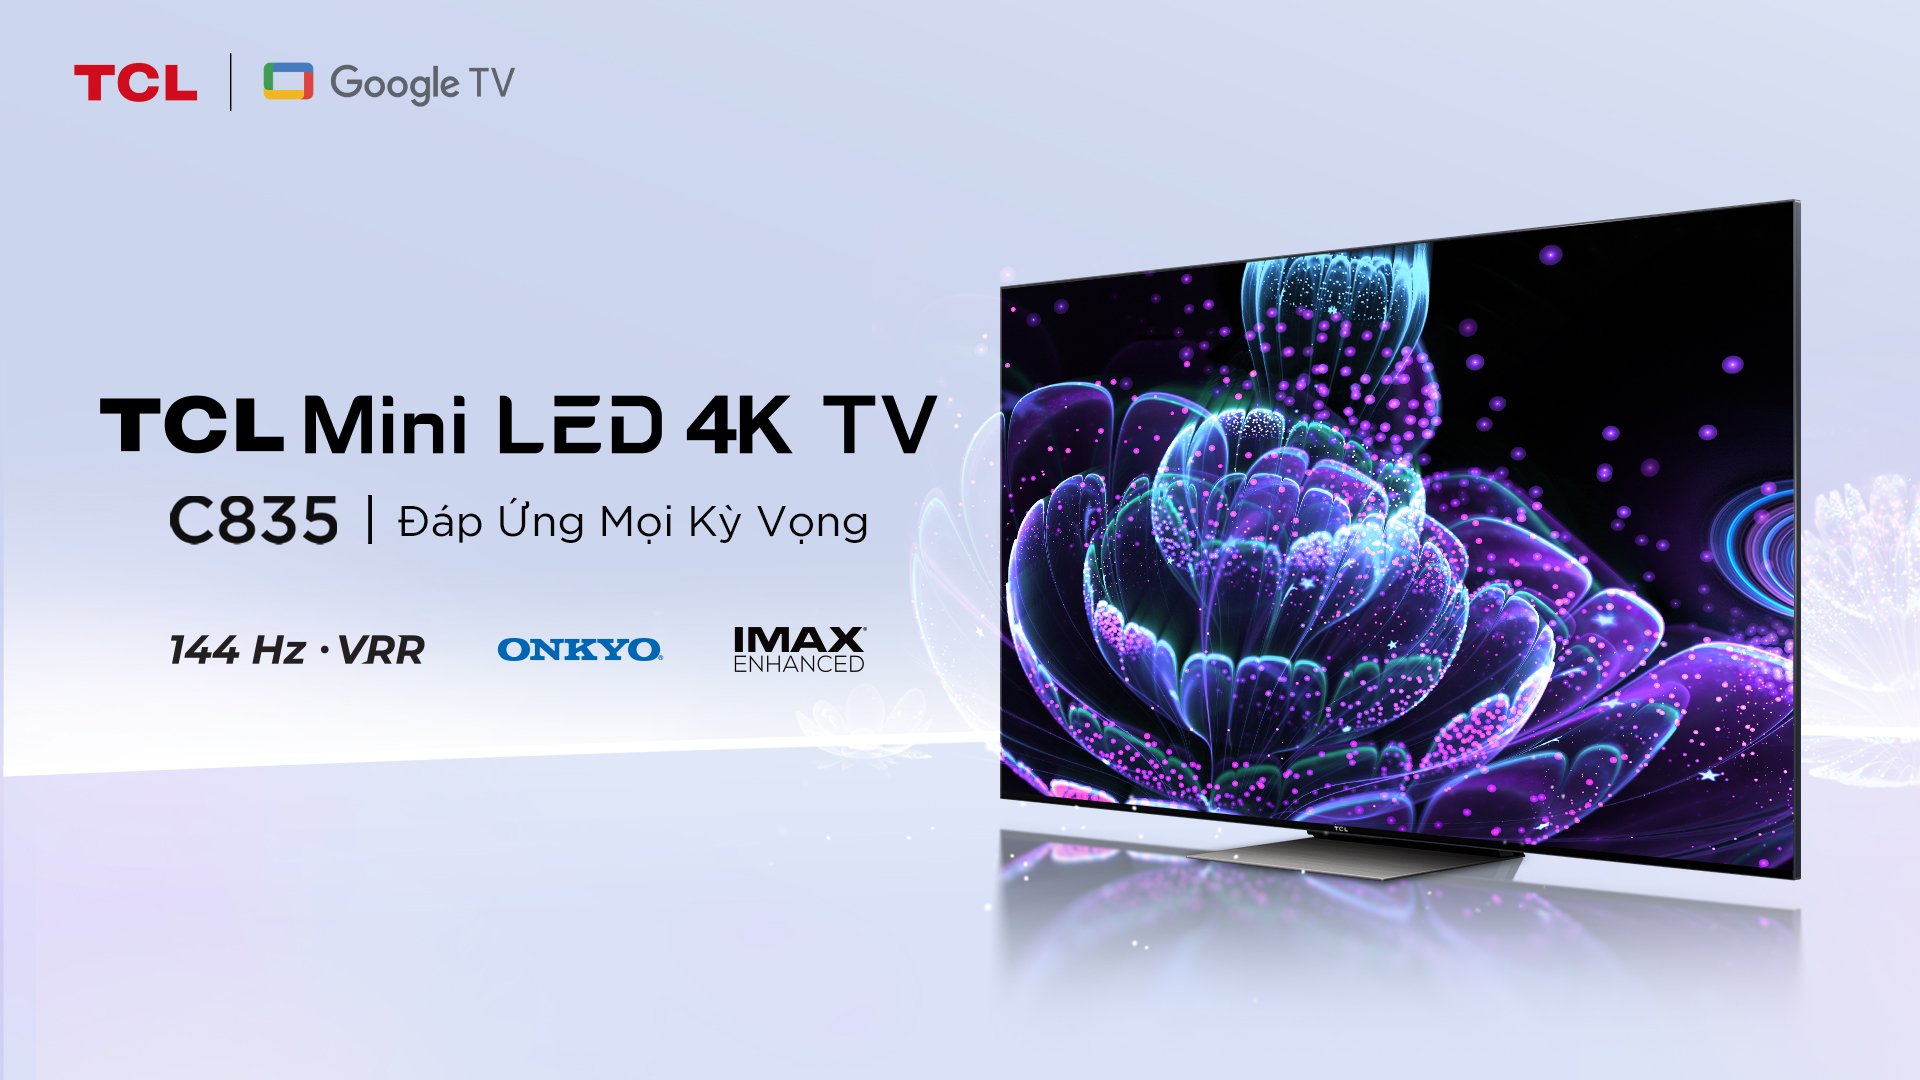 TCL Công bố Thông điệp thương hiệu mới, TV mini LED & QLED 144Hz và các sản phẩm AIxIOT hoàn toàn mới 2022 - Ảnh 2.